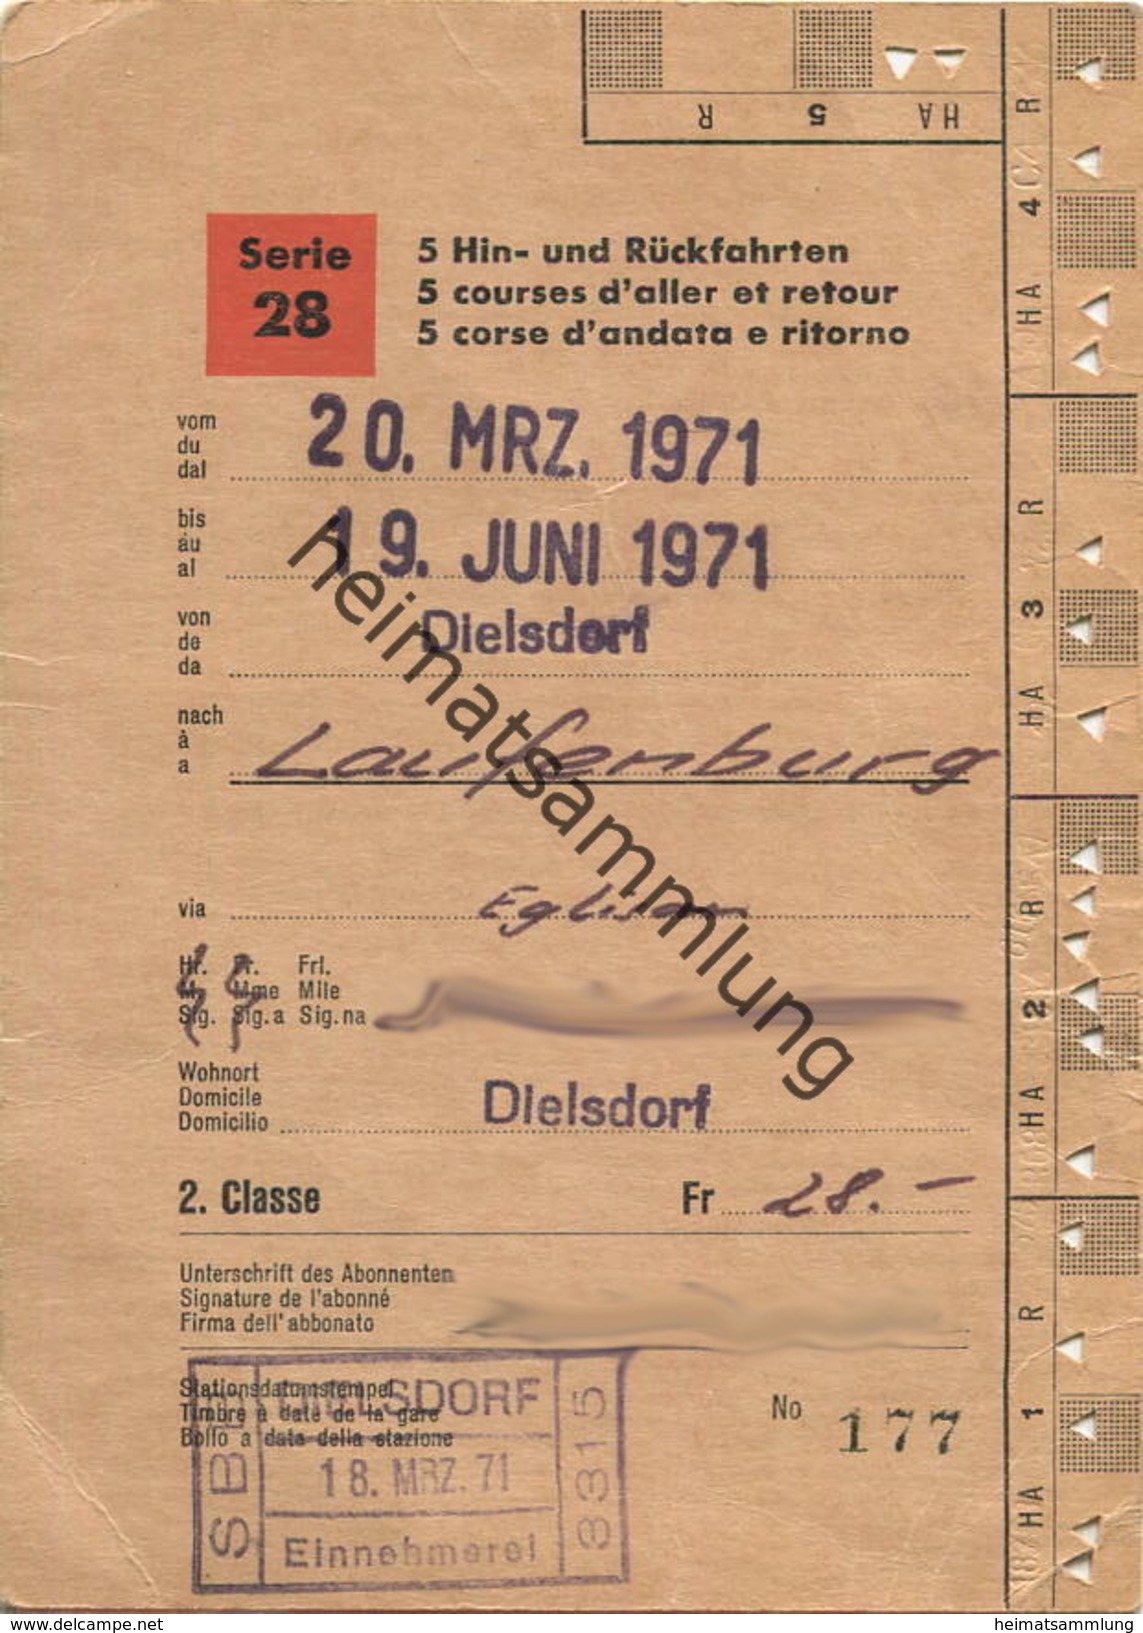 Schweiz - SBB - Schüler- Und Lehrlingsabonnement Serie 28 5 Hin- Und Rückfahrten - Dielstorf Laufenburg 1971 - Europe